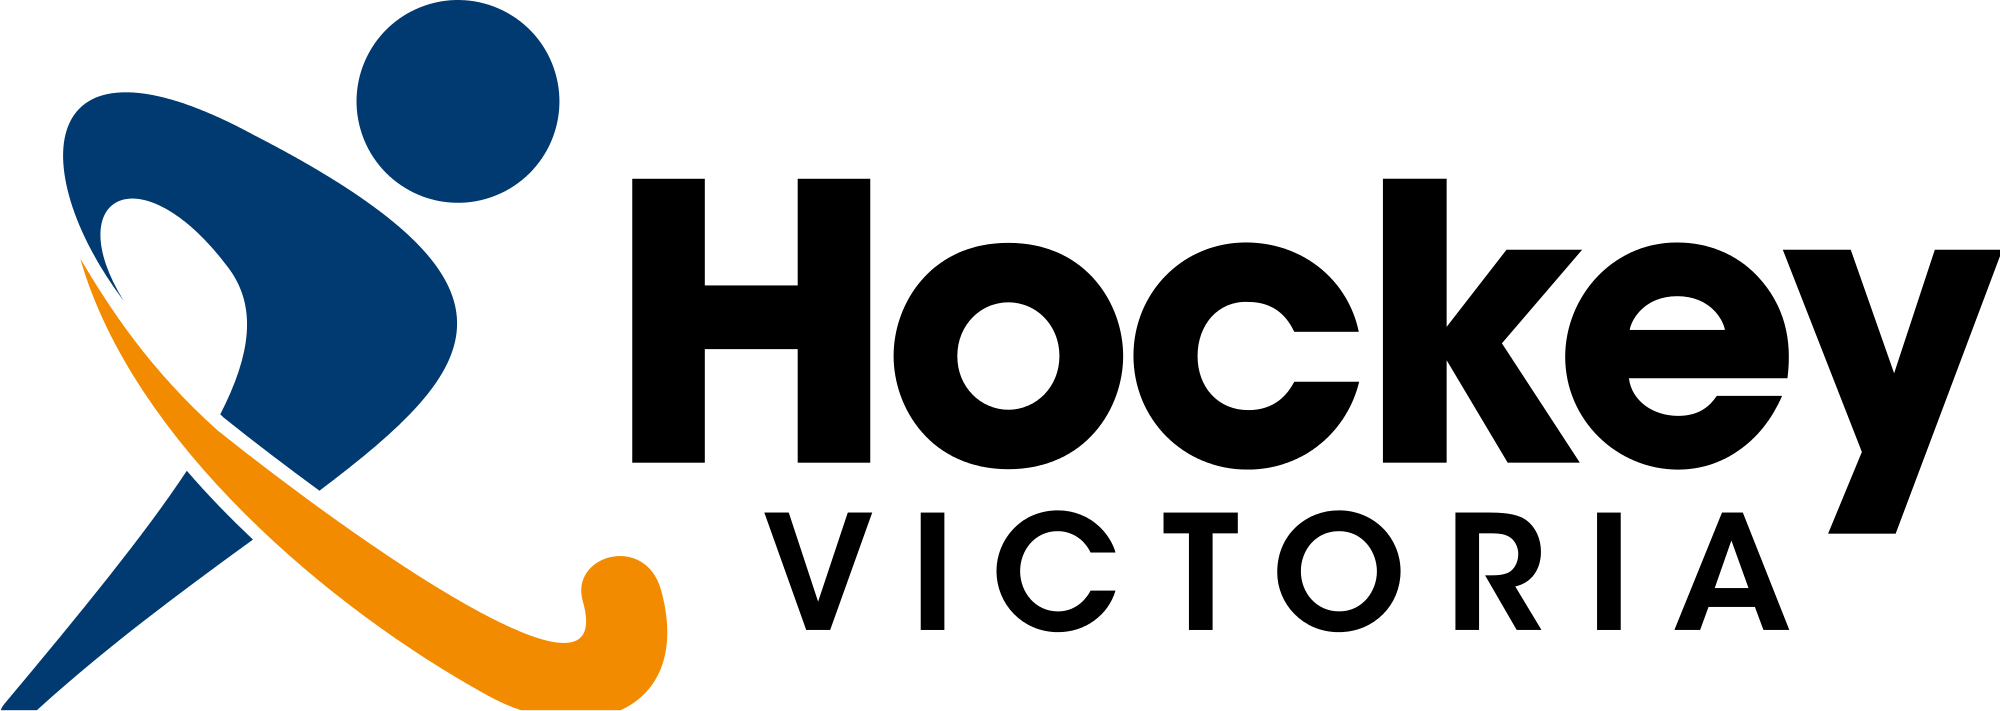 Hockey Logo - File:Hockey Victoria logo.svg - Wikimedia Commons